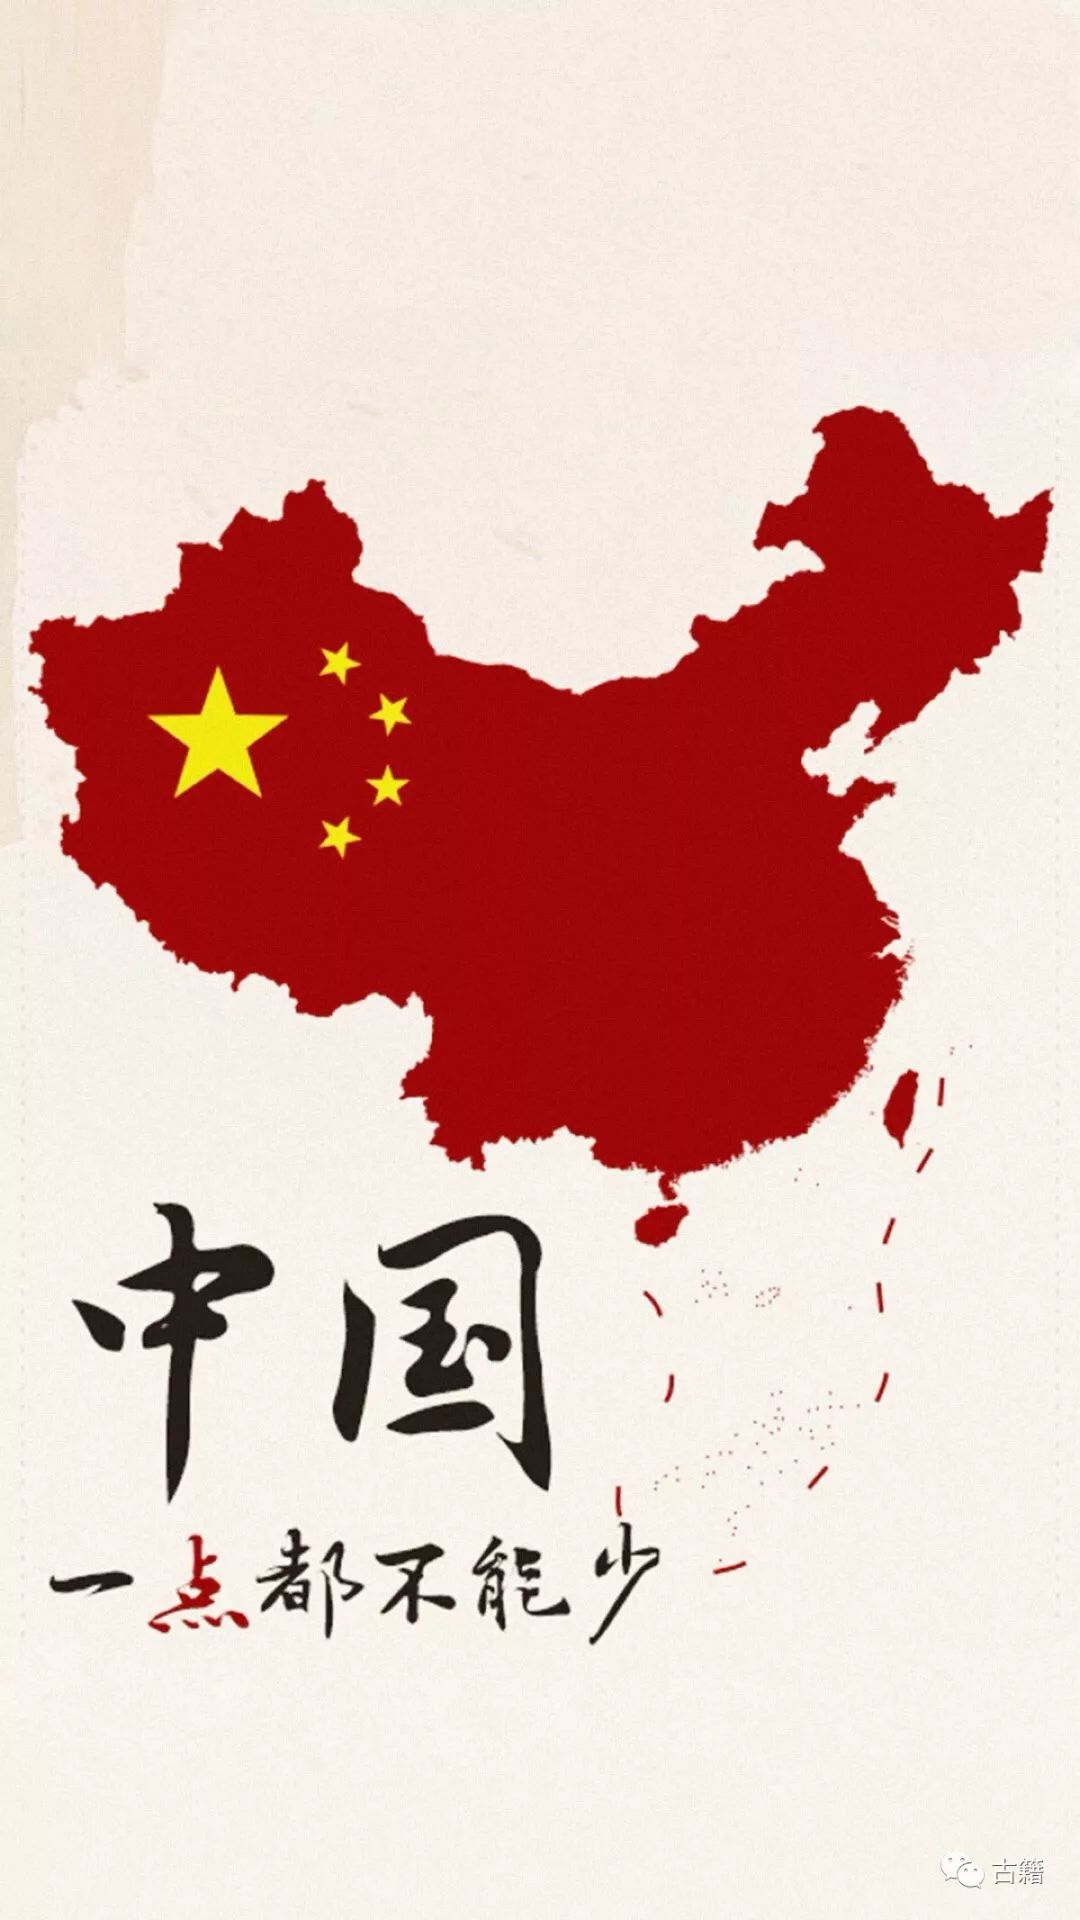 这些中国地图都不对!